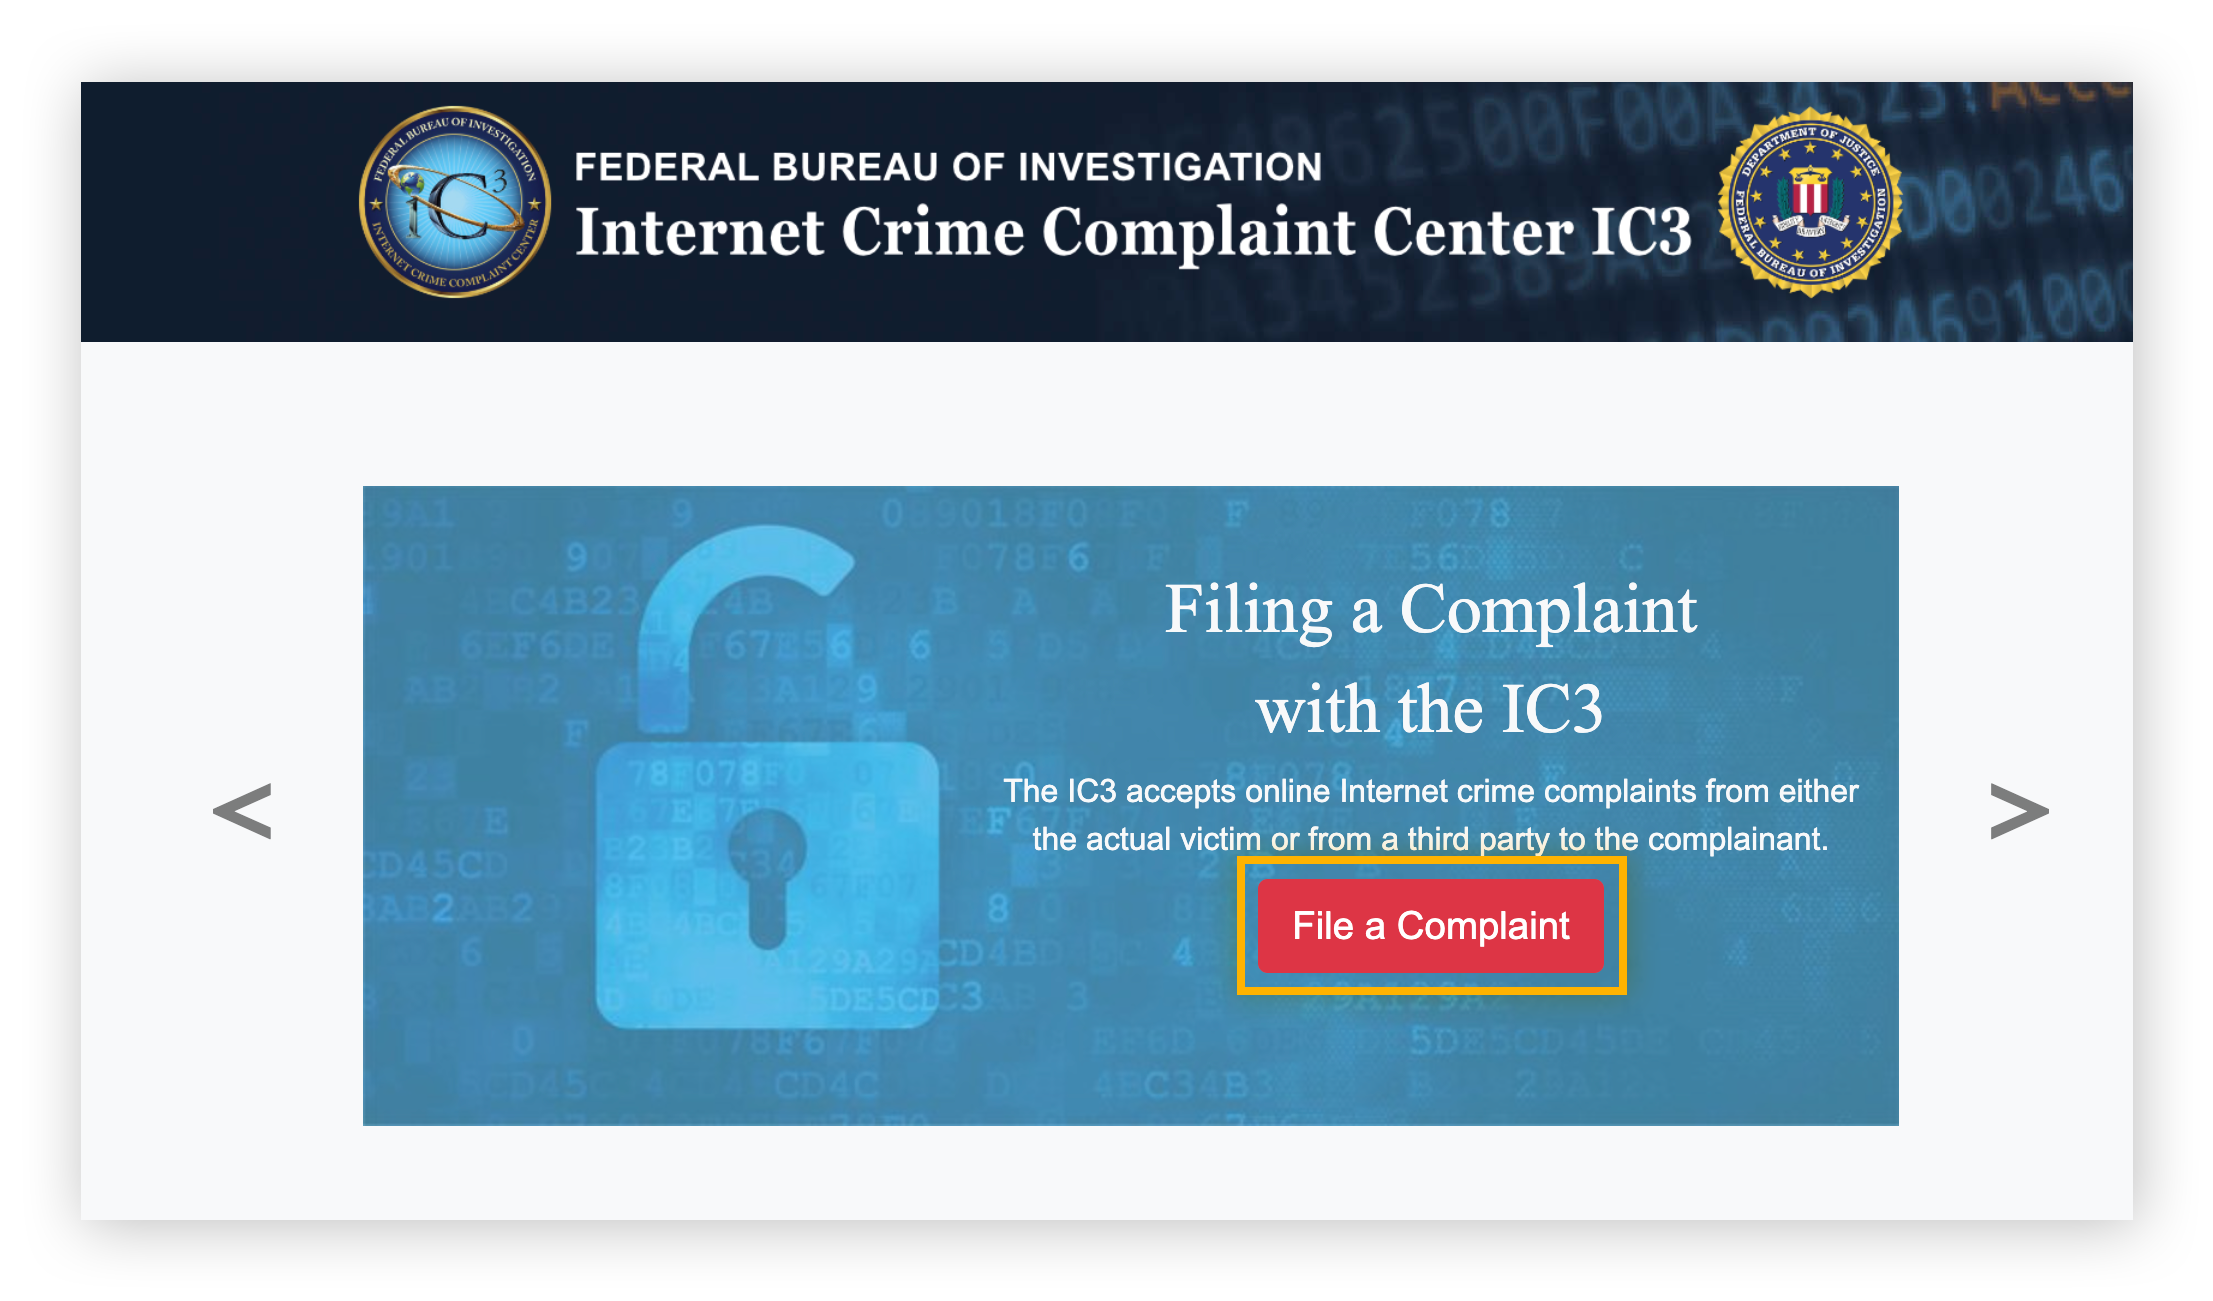 Registre um crime na Internet com o IC3 usando o formulário File a Complaint (registrar uma reclamação).